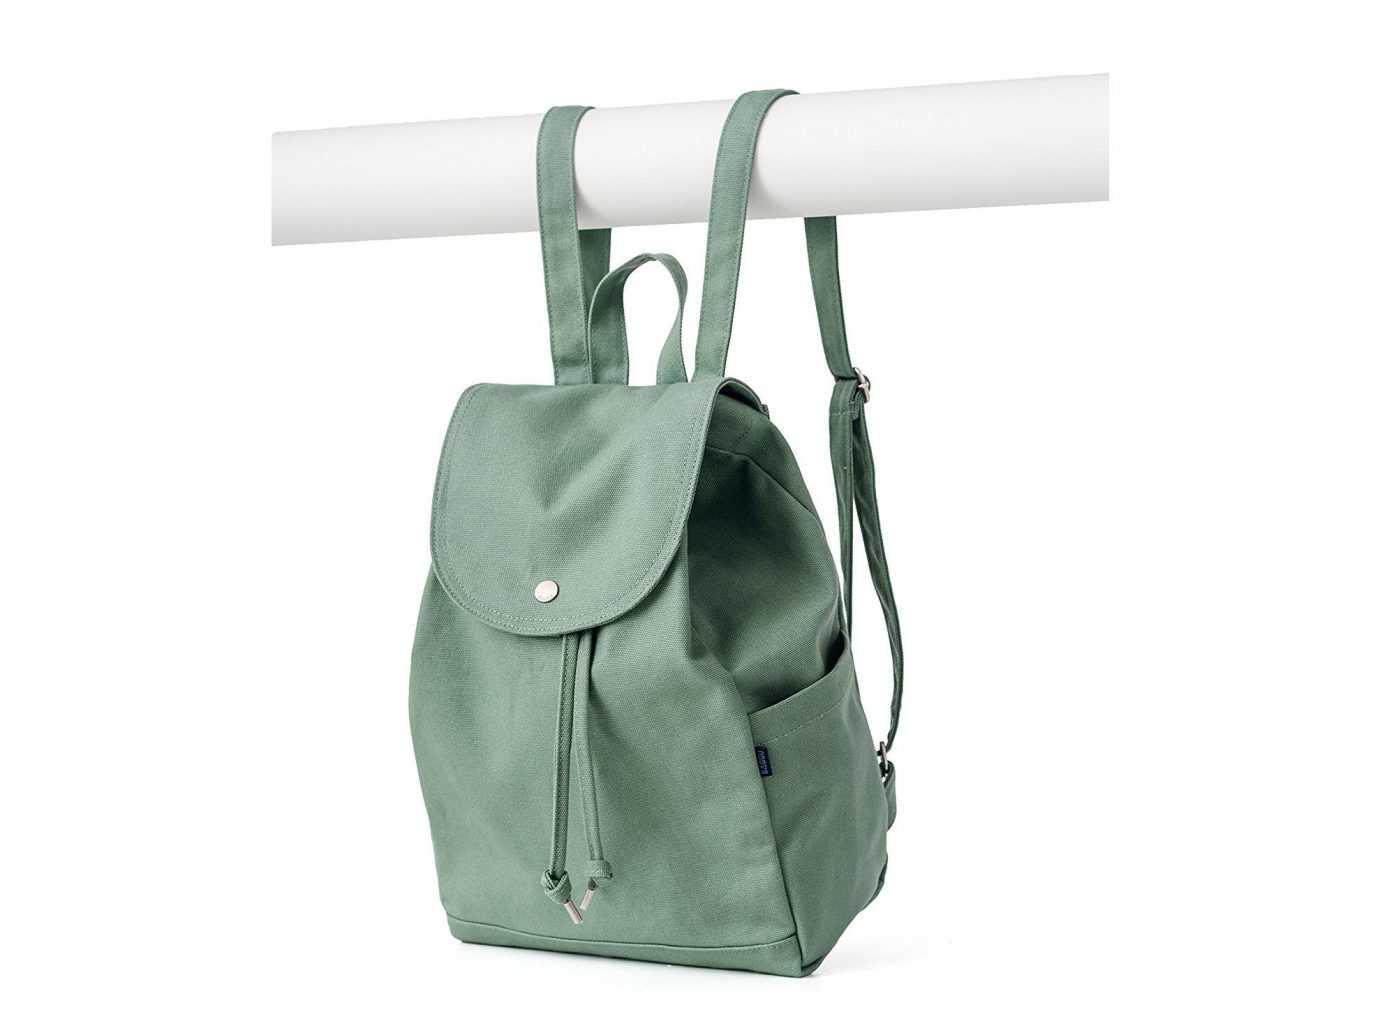 Style + Design bag product handbag accessory product design shoulder bag brand